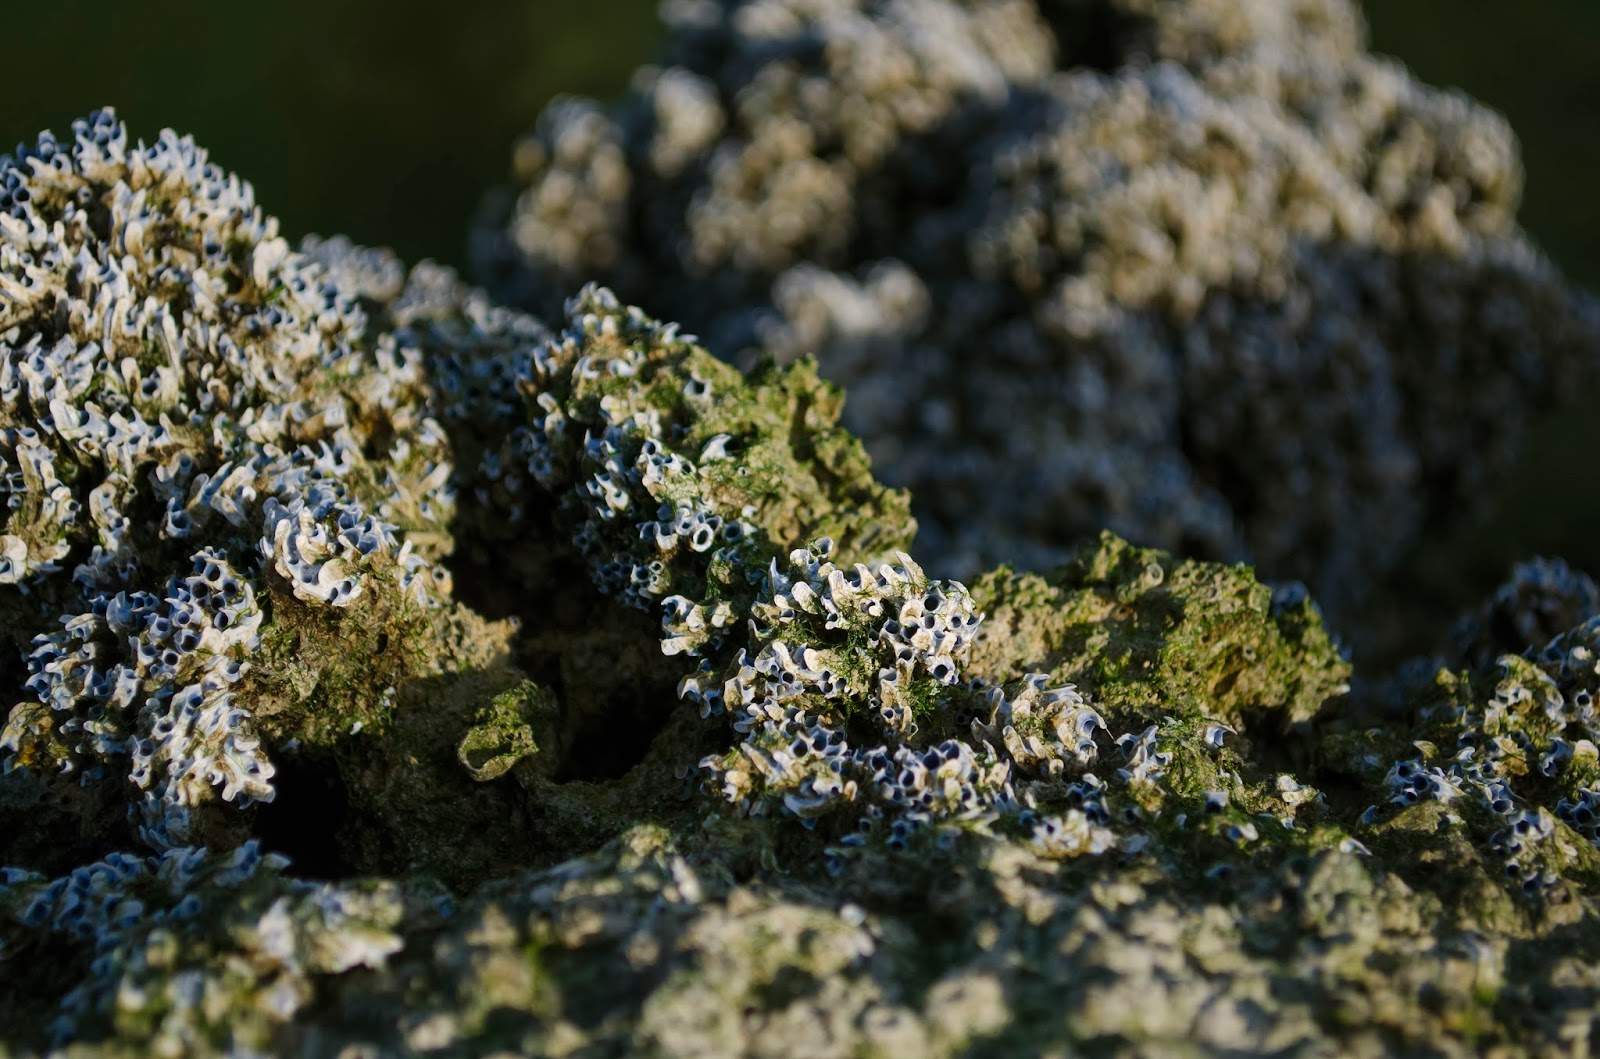 Fungus on Mangroves' Rocks - Photo by Adham Al Oka